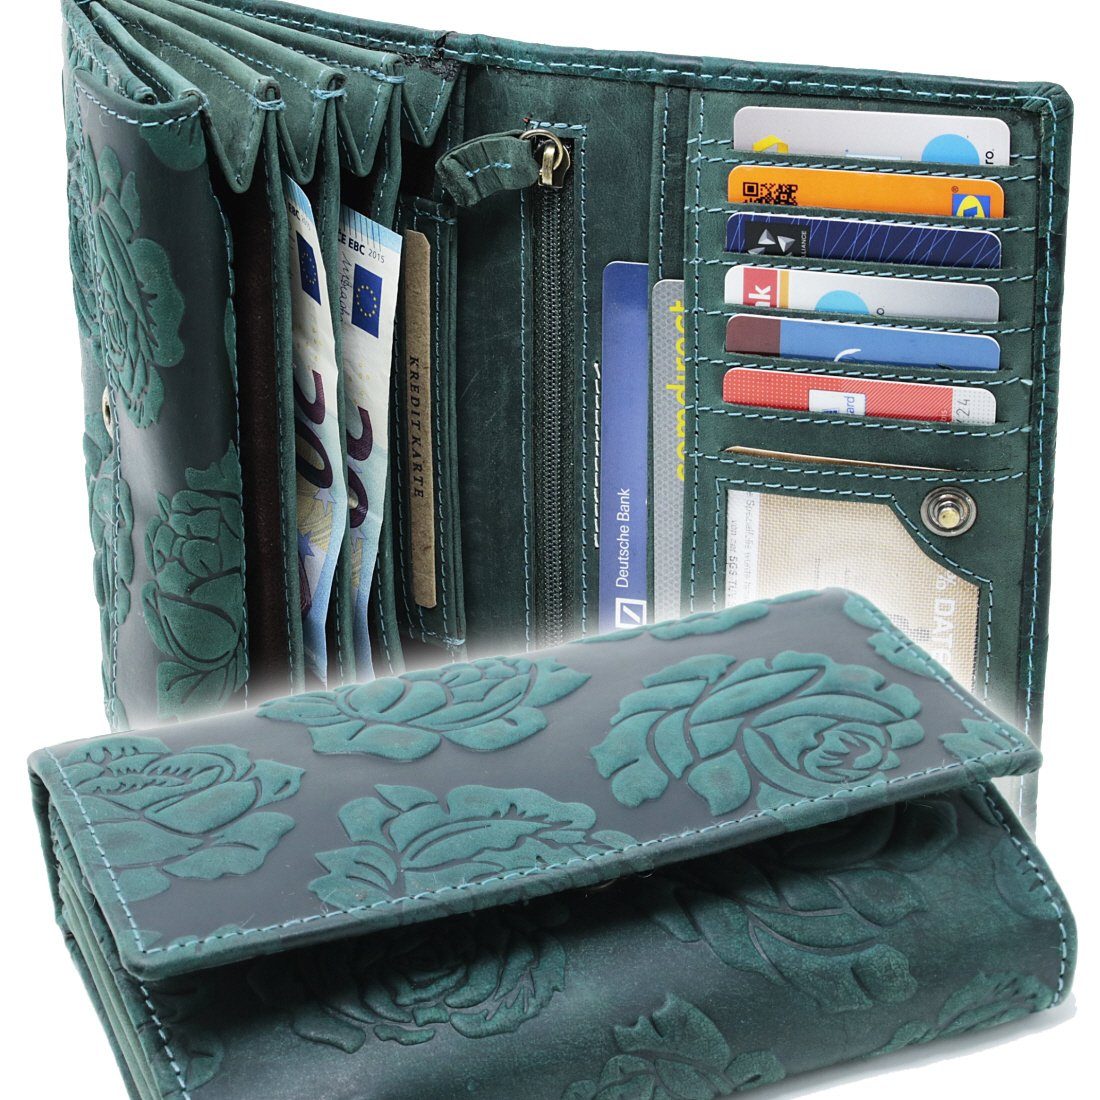 XXL Damen Geldbörse mit RFID Schutz Rindleder Portemonnaie Geldbeutel Geldtasche 